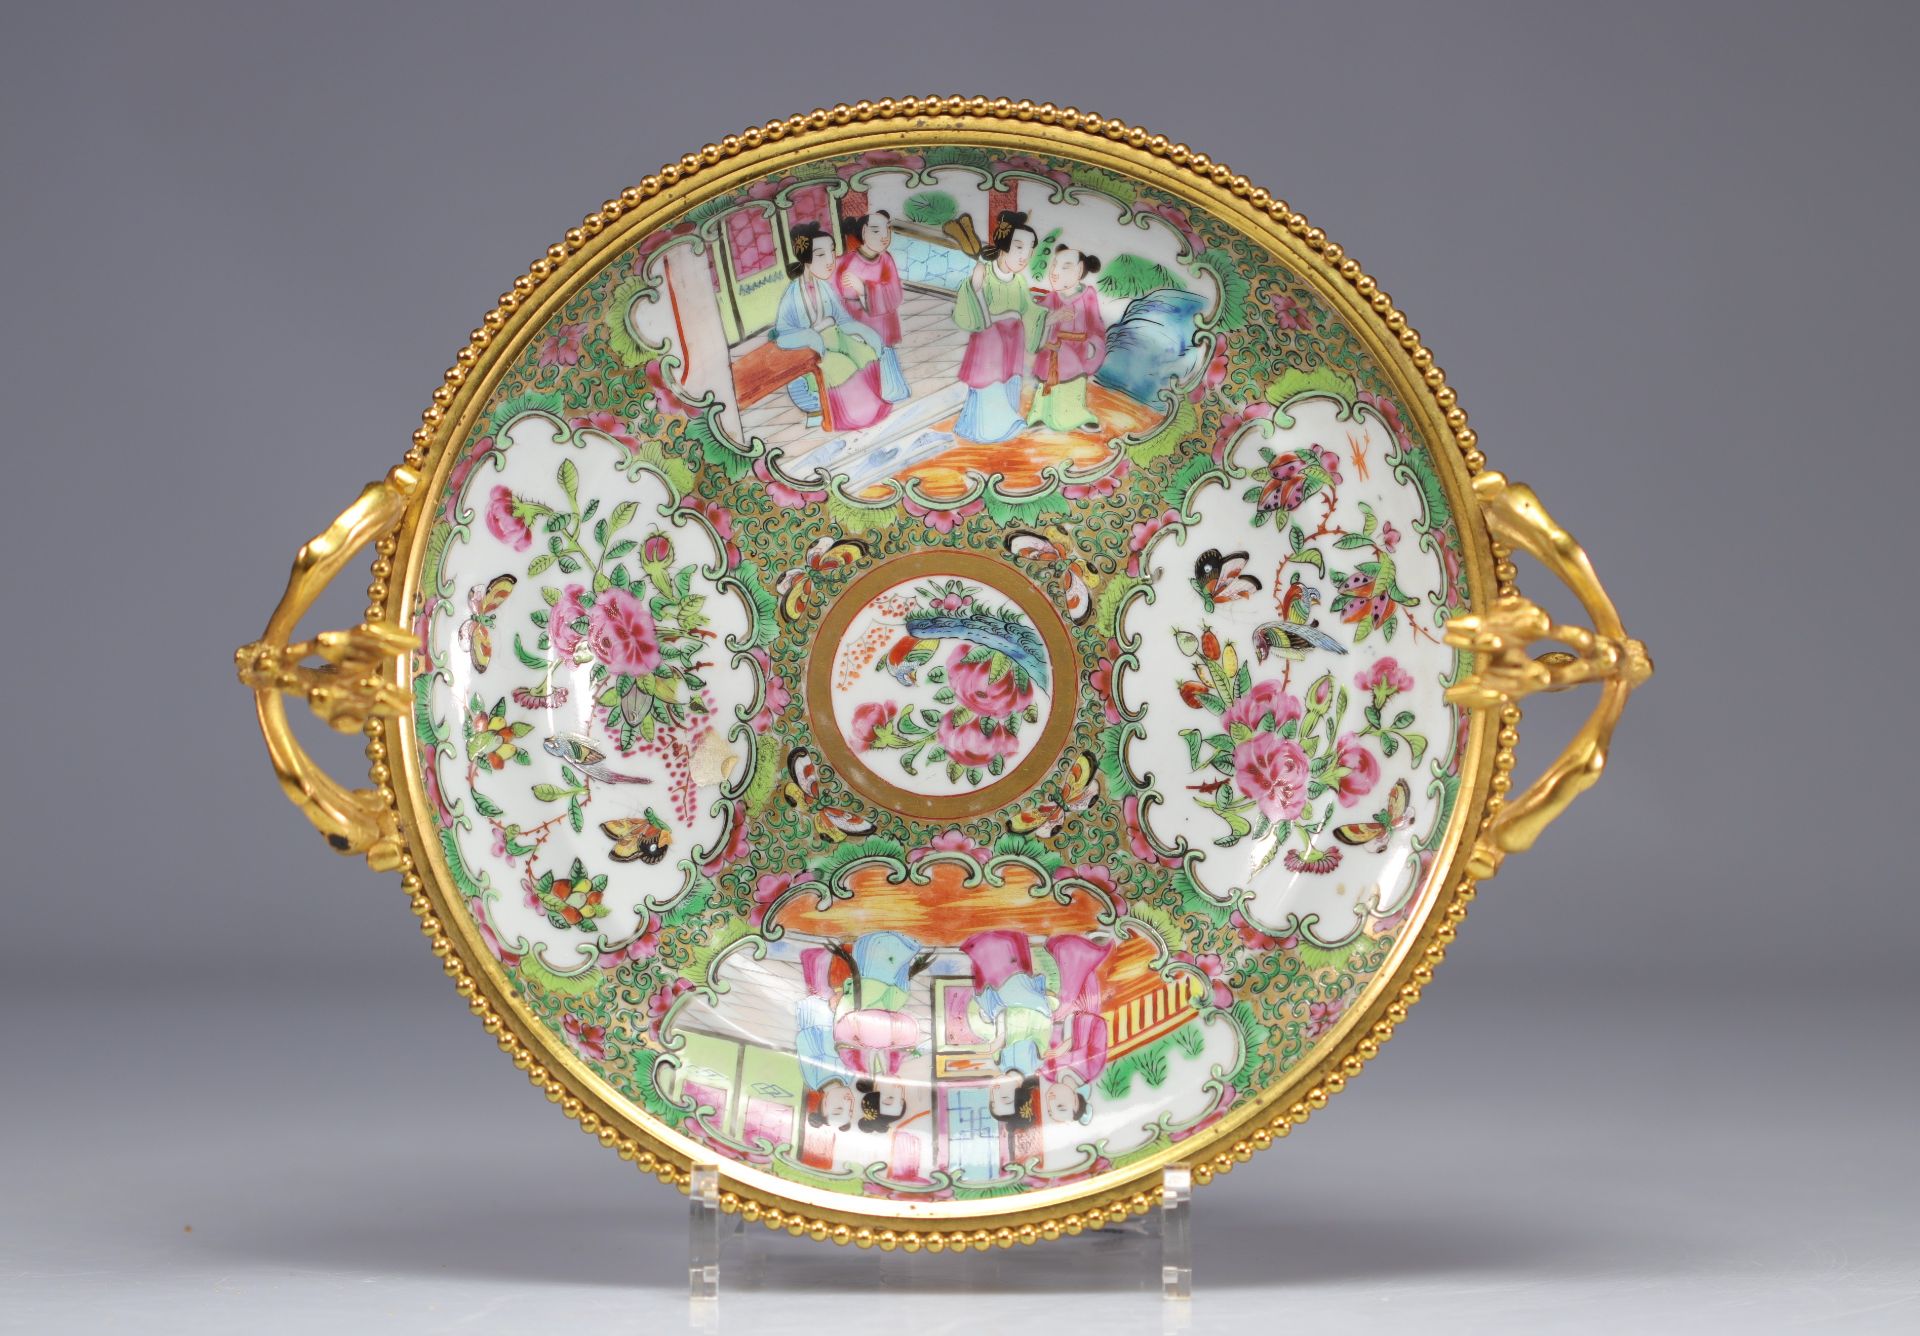 Napoleon III bronze-mounted porcelain bowl